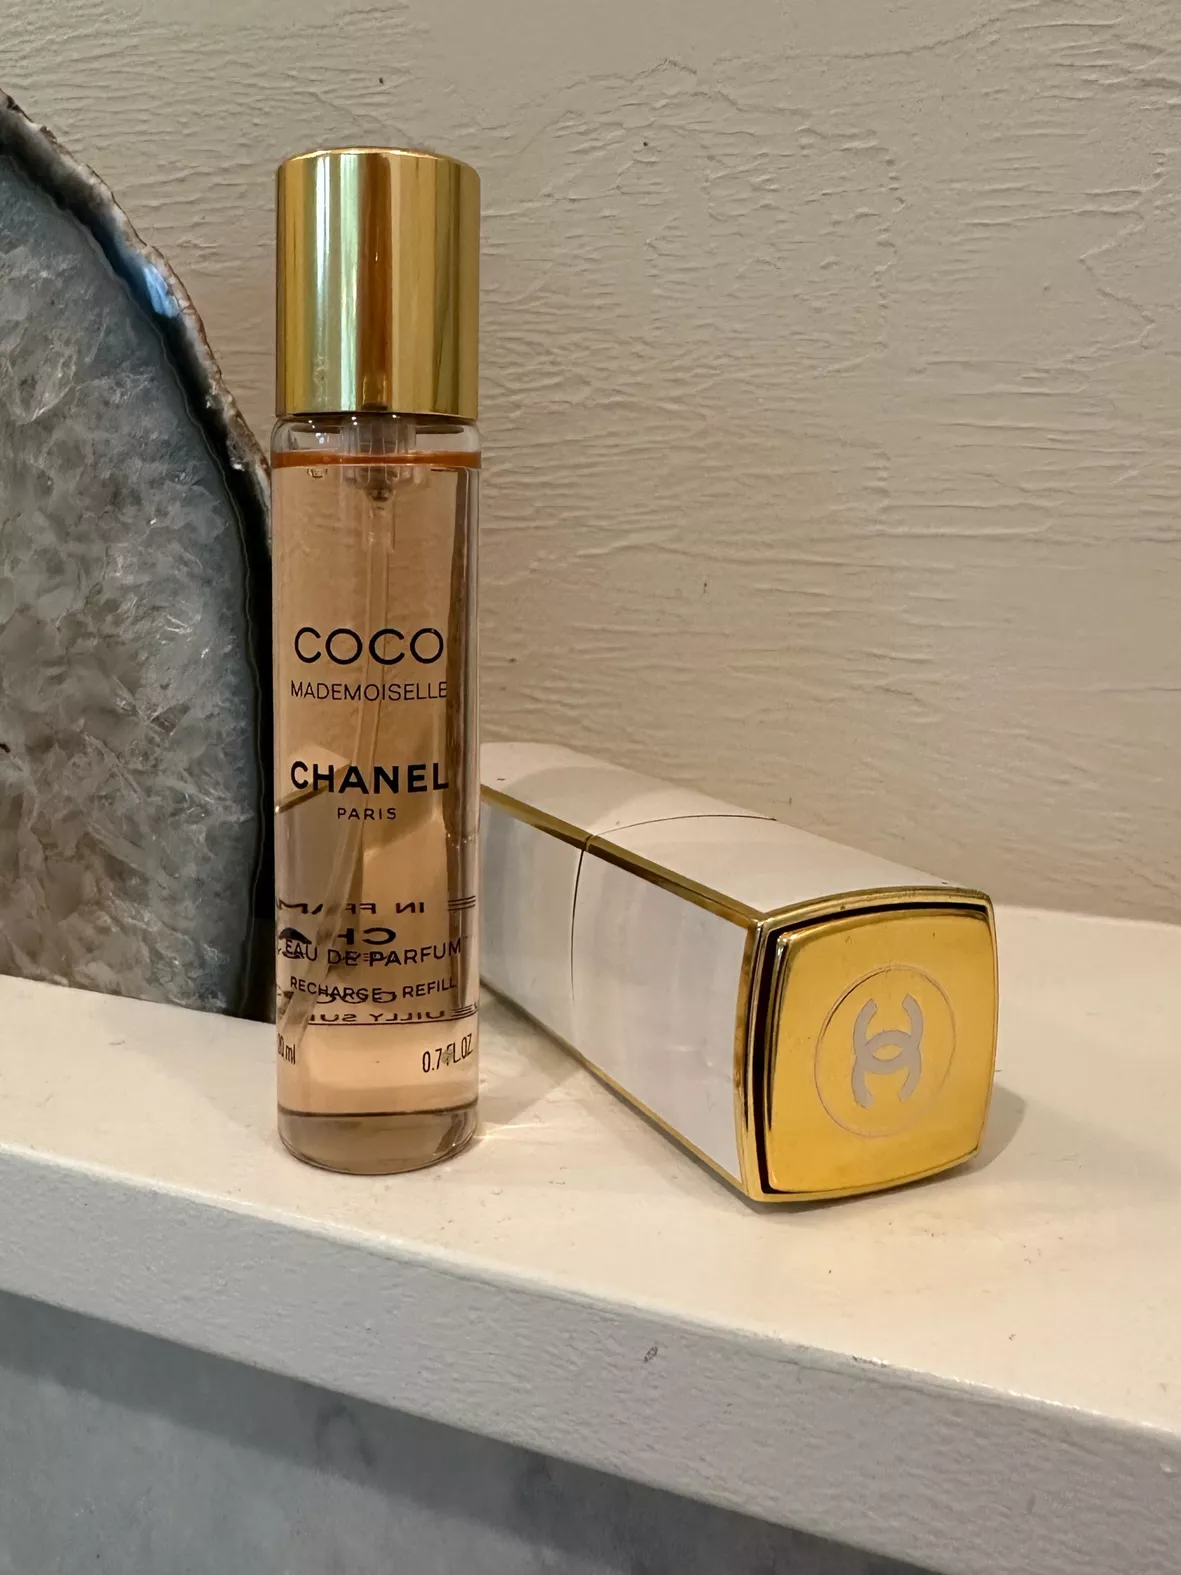 Chanel Coco Mademoiselle - Eau de Parfum (2 refills)